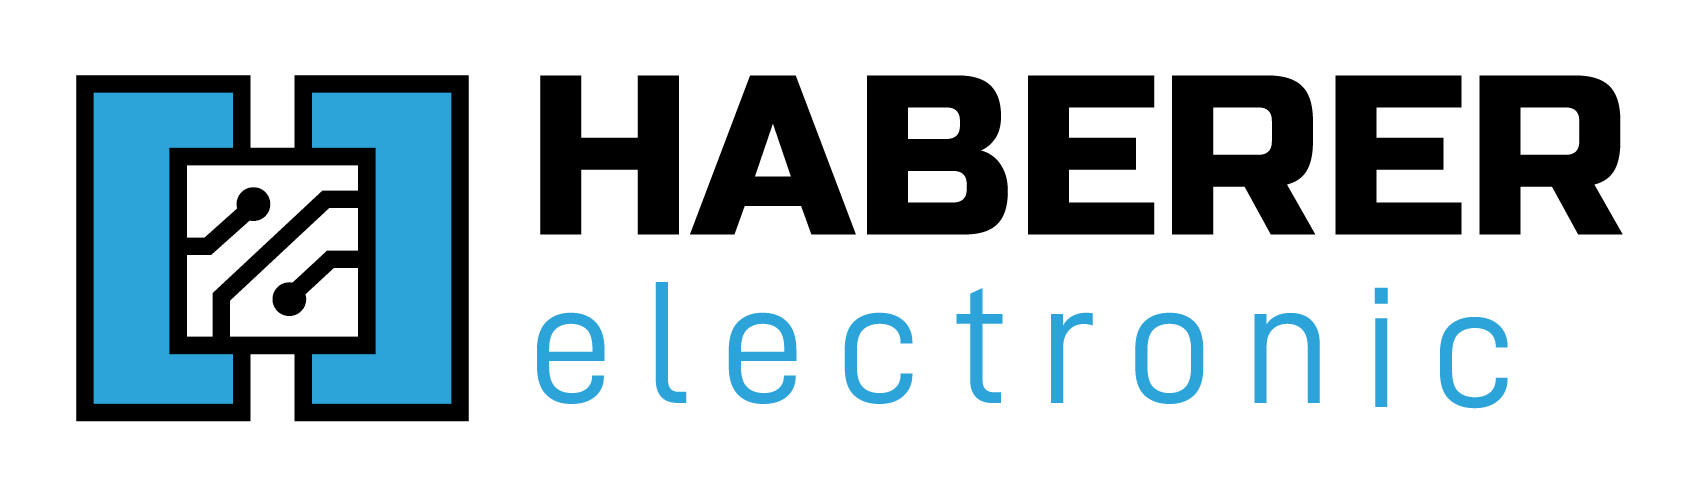 Logo_HabererElectronic-01.png